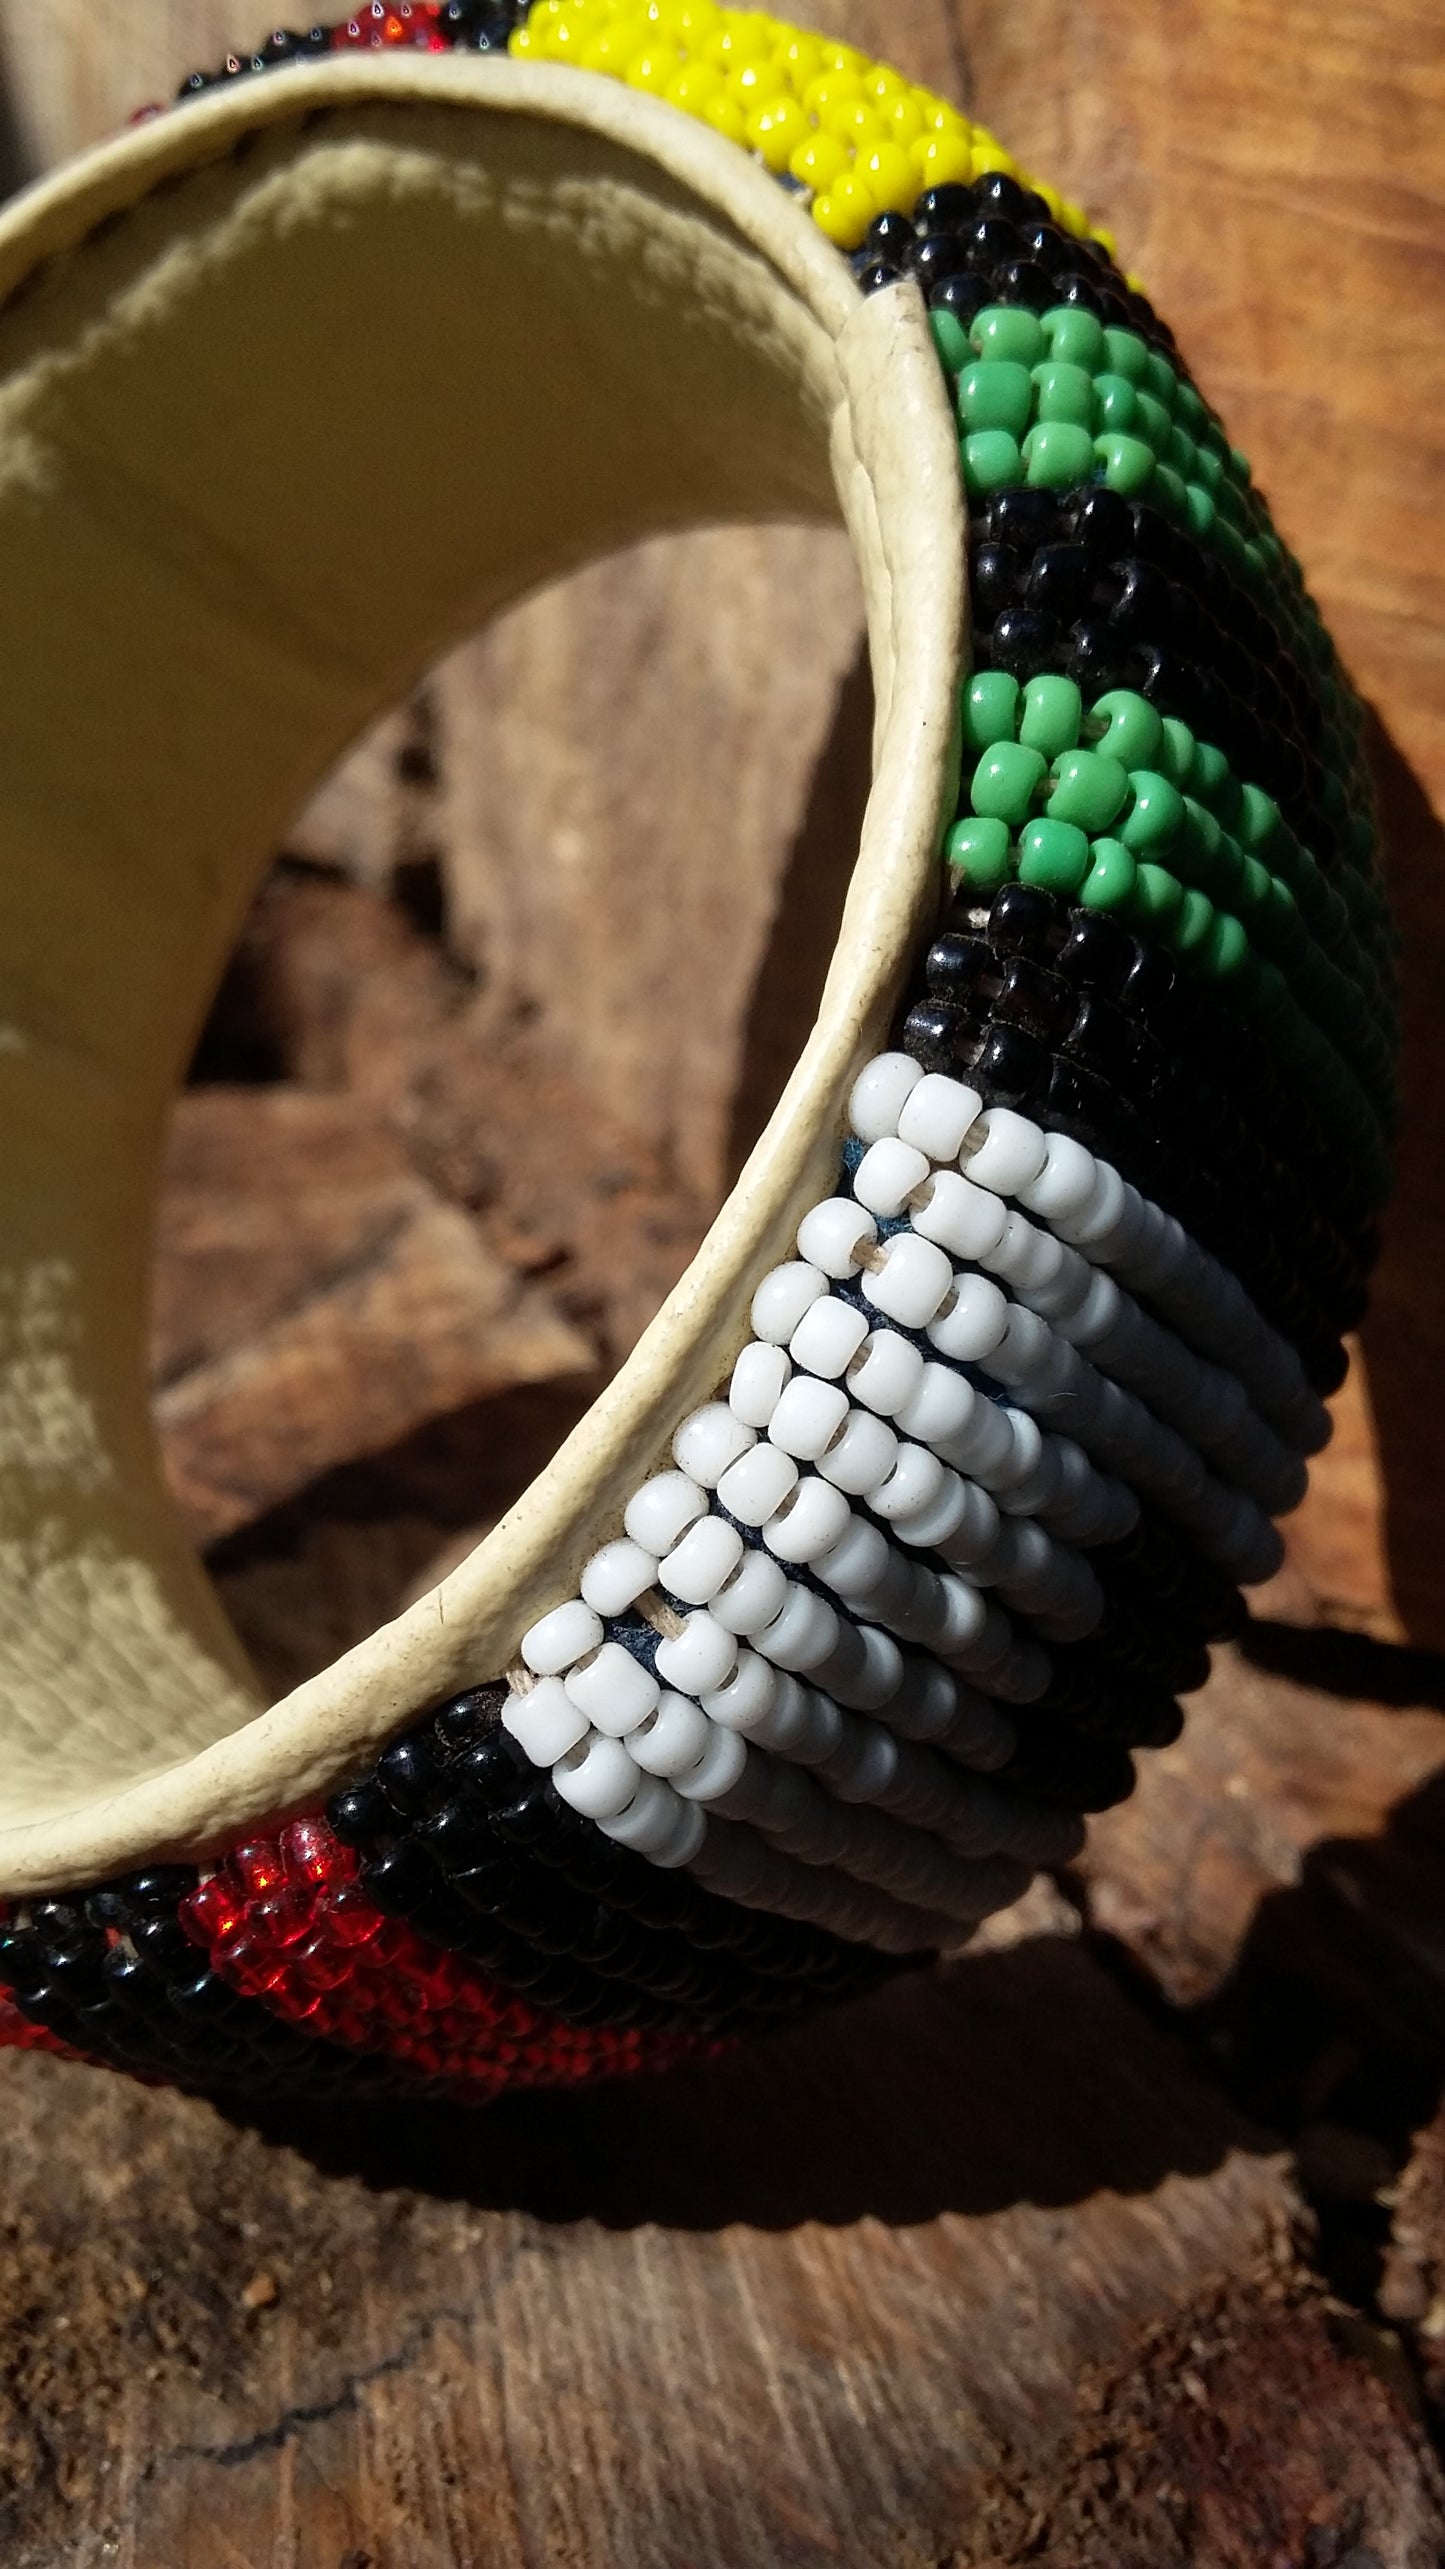 Bracelet d'inspiration ethnique: Cuir perles épais